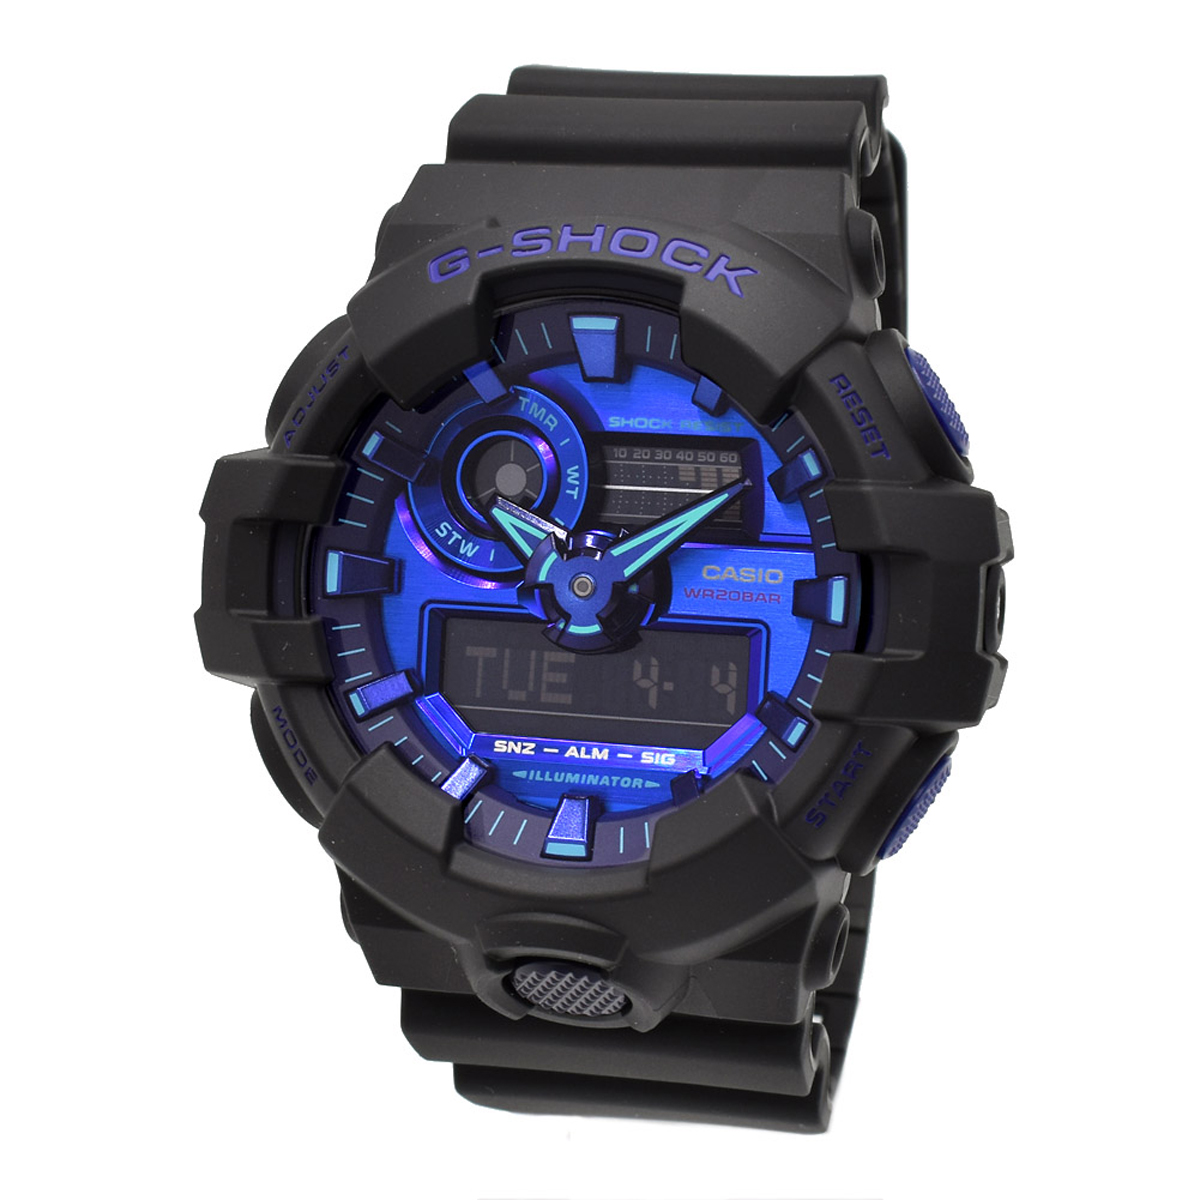 カシオ CASIO 腕時計 G-SHOCK Gショック GA-700VB-1A VIRTUAL BLUE Series アナデジ 時計 メンズ ブルー+ブラック 海外正規品腕時計 時計